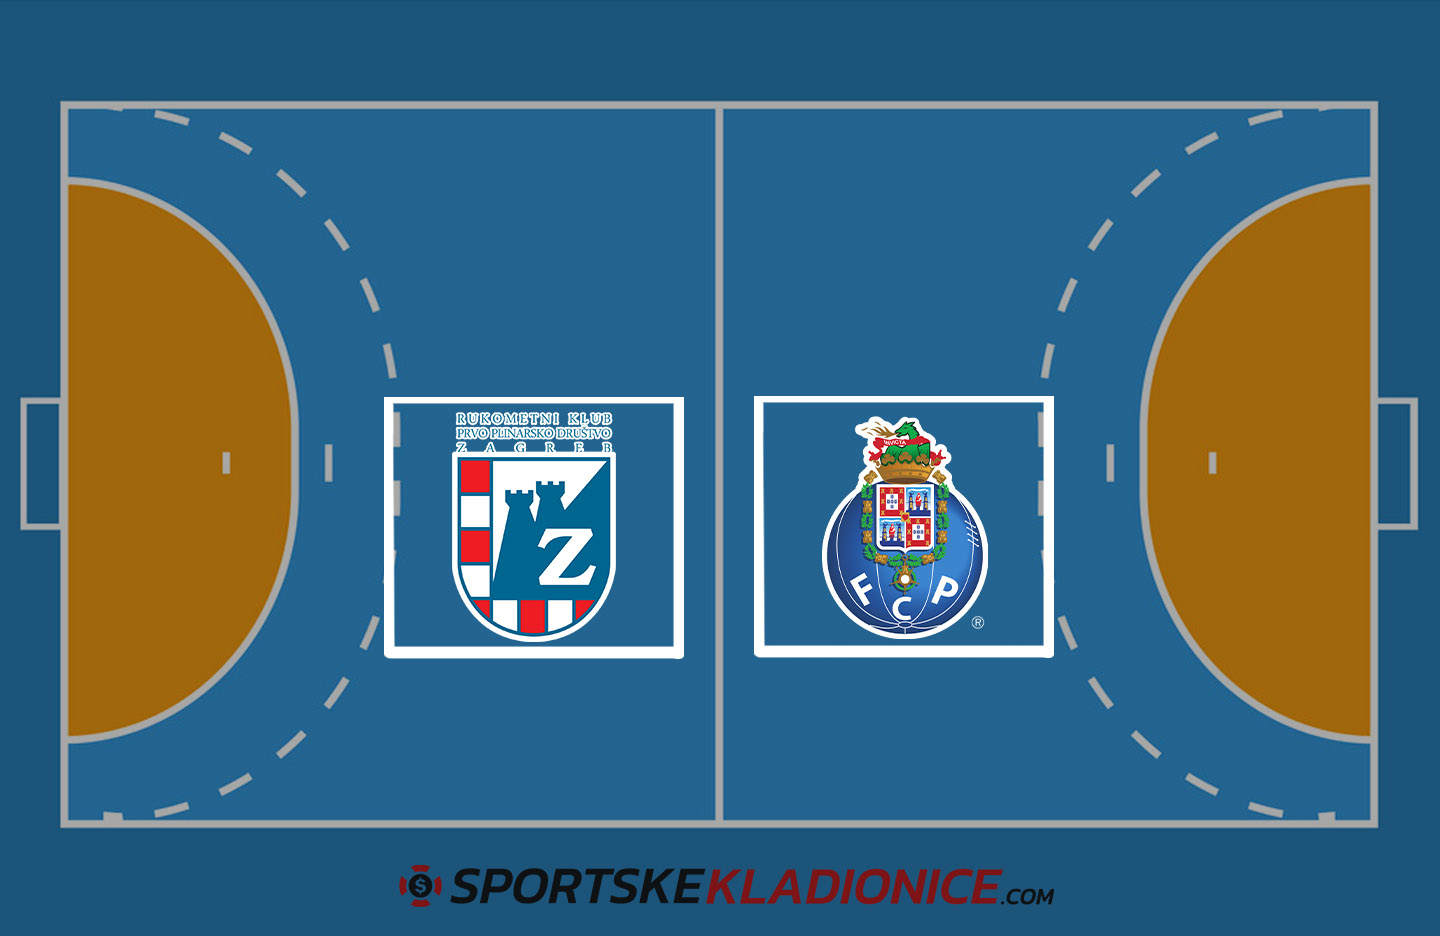 PPD Zagreb vs. Porto